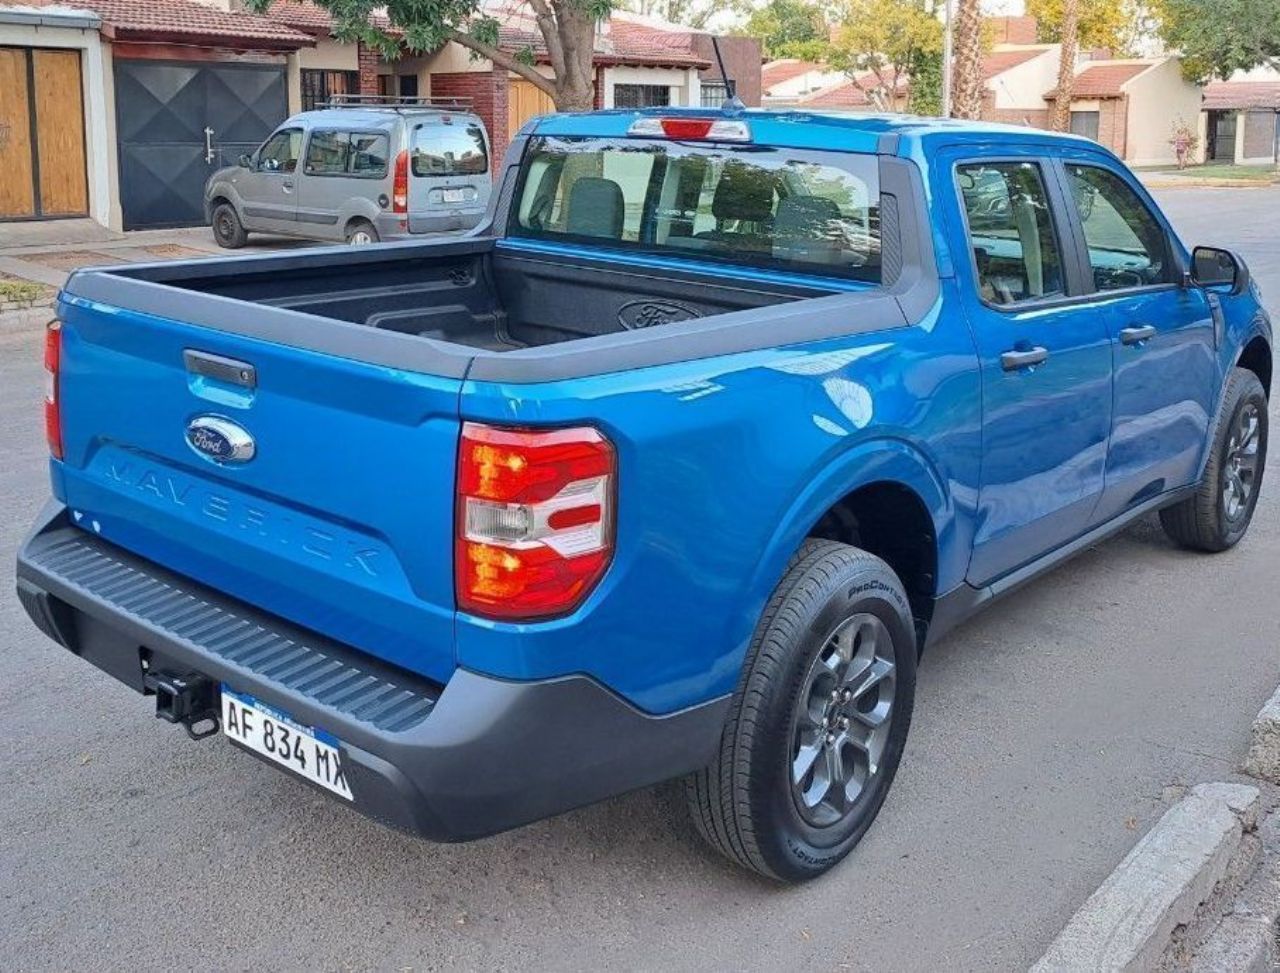 Ford Maverick Nueva en Mendoza, deRuedas